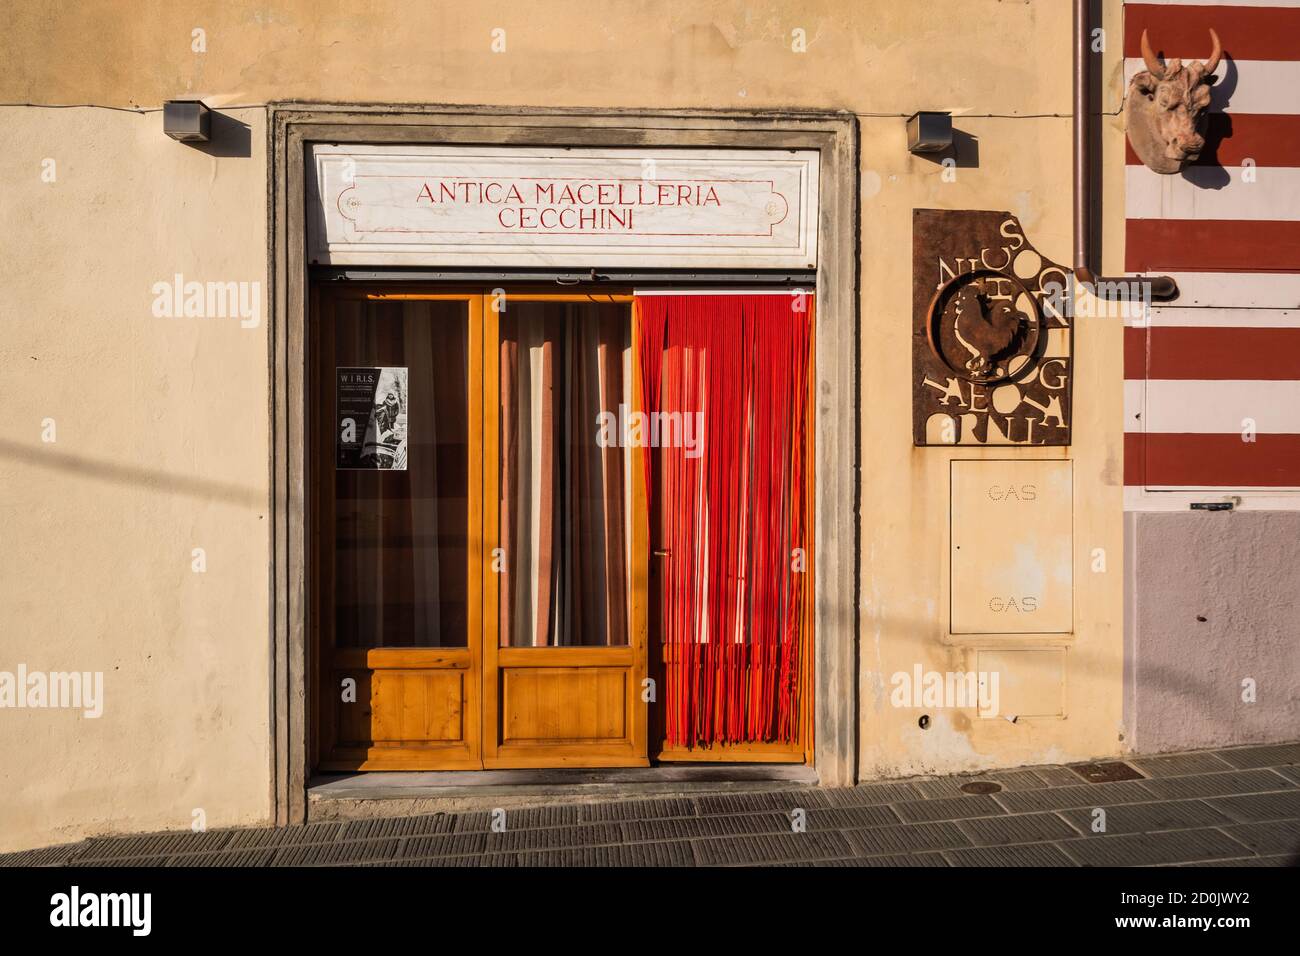 Panzano, Chianti, Italie - août 29 2020 : Antica Macelleria Cecchini, la boutique Butcher dirigée par Dario Cecchini célèbre pour Bistecca Fiorentina et Panzan Banque D'Images